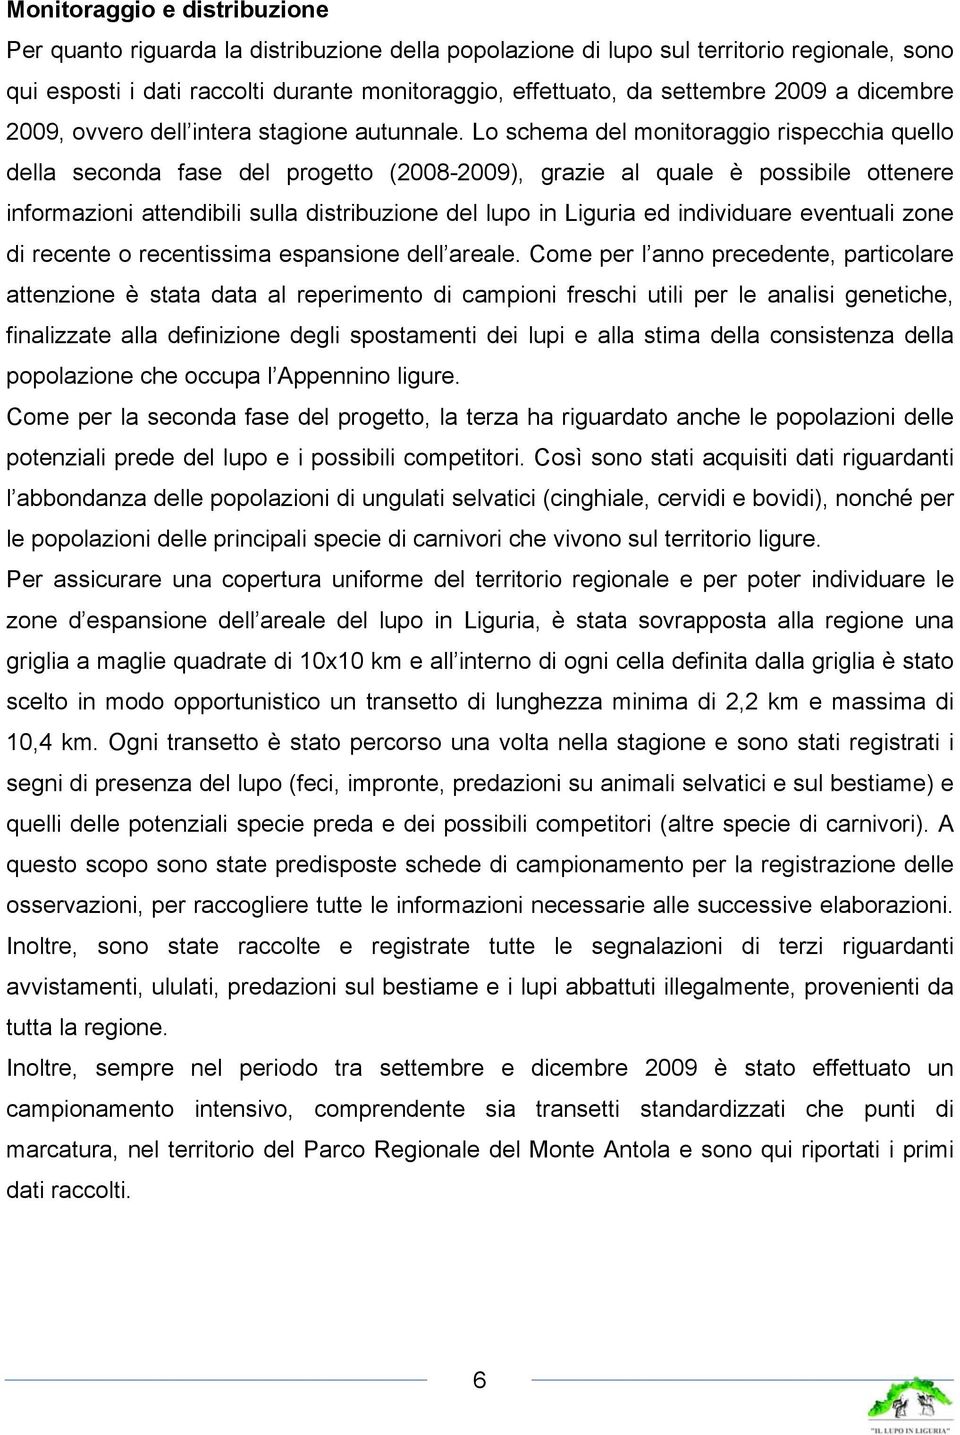 Lo schema del monitoraggio rispecchia quello della seconda fase del progetto (2008-2009), grazie al quale è possibile ottenere informazioni attendibili sulla distribuzione del lupo in Liguria ed